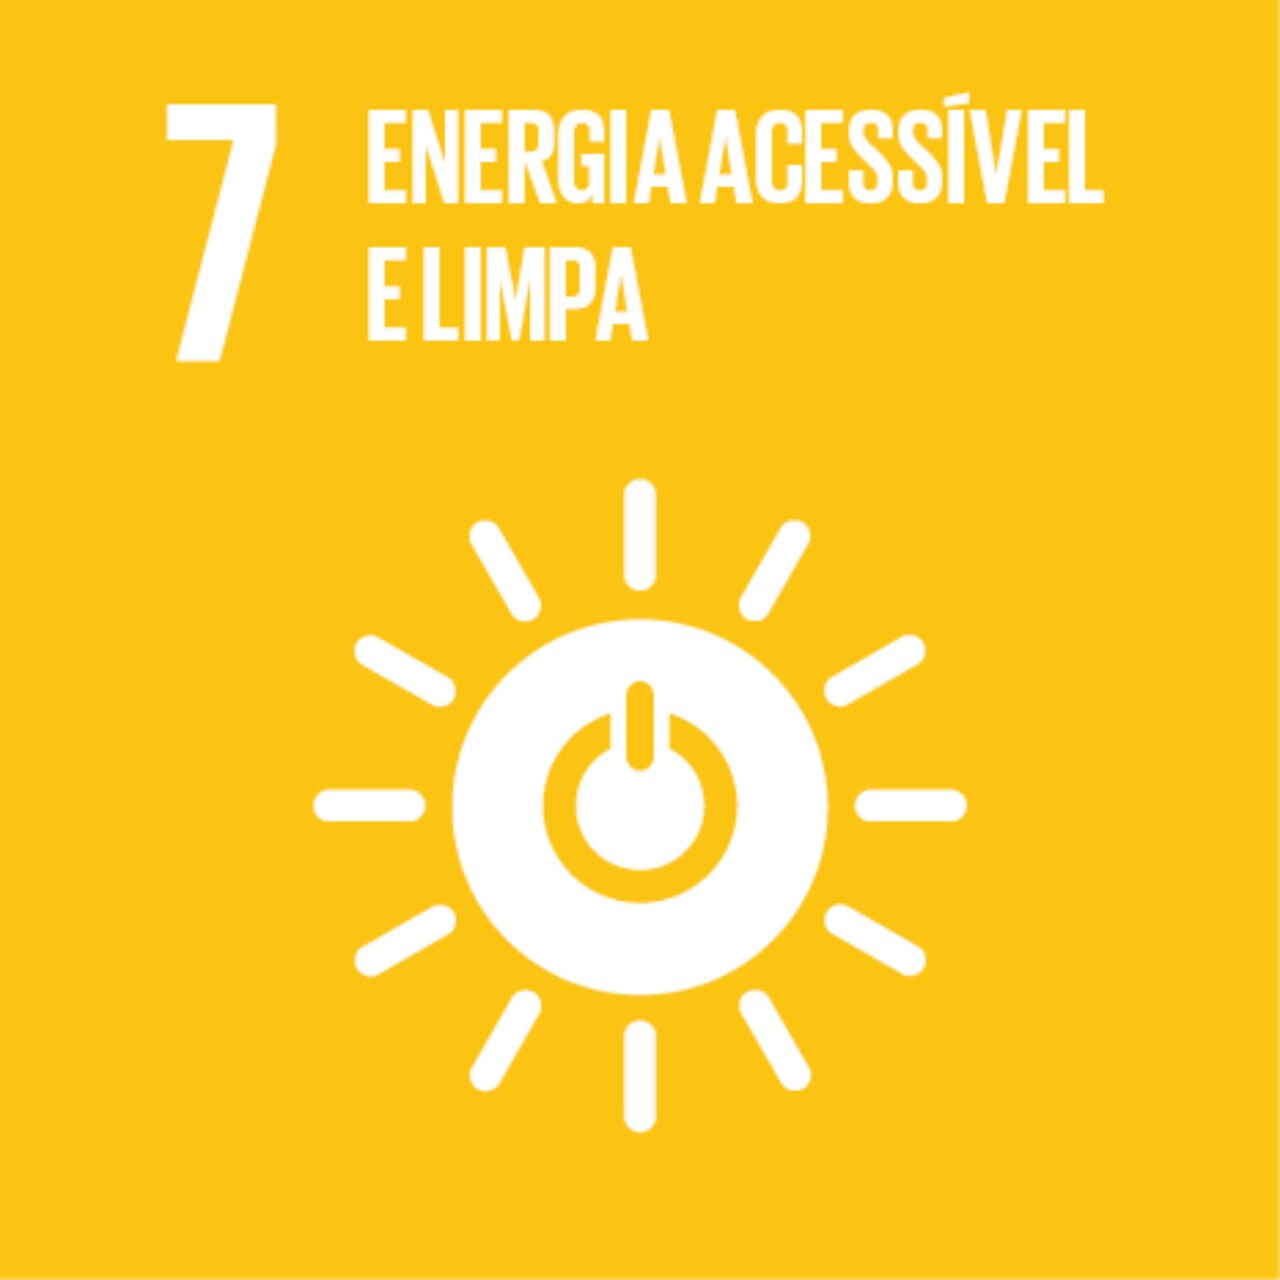 Imagem que representa o ODS número Sete - energia acessível e limpa, com fundo amarelo e o ícone de sol, com o símbolo de “ligar/desligar” dentro dele.